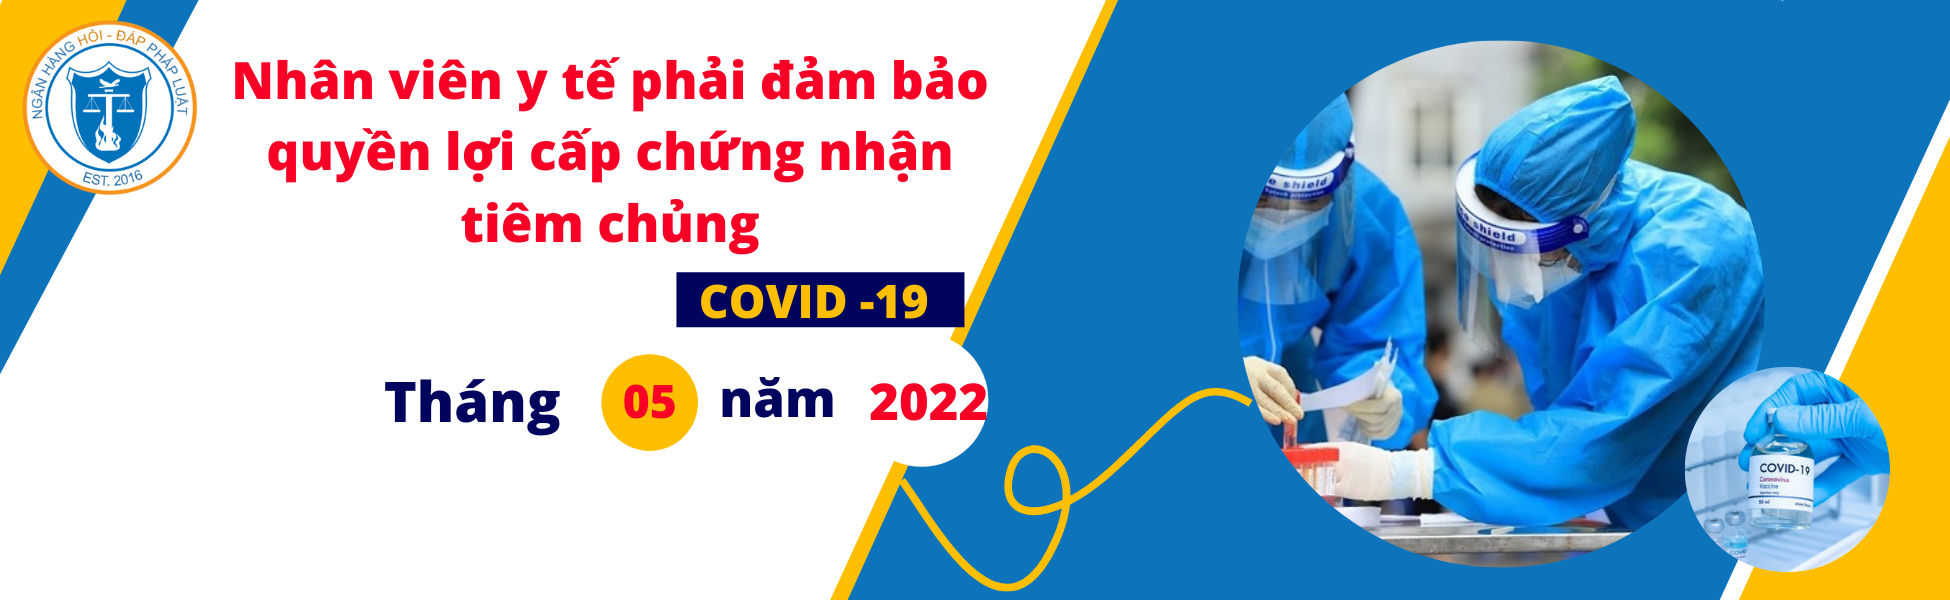 Quán triệt nhân viên y tế phải đảm bảo quyền lợi người dân được cấp chứng nhận tiêm chủng Covid-19 và xác nhận “Hộ chiếu vắc xin”